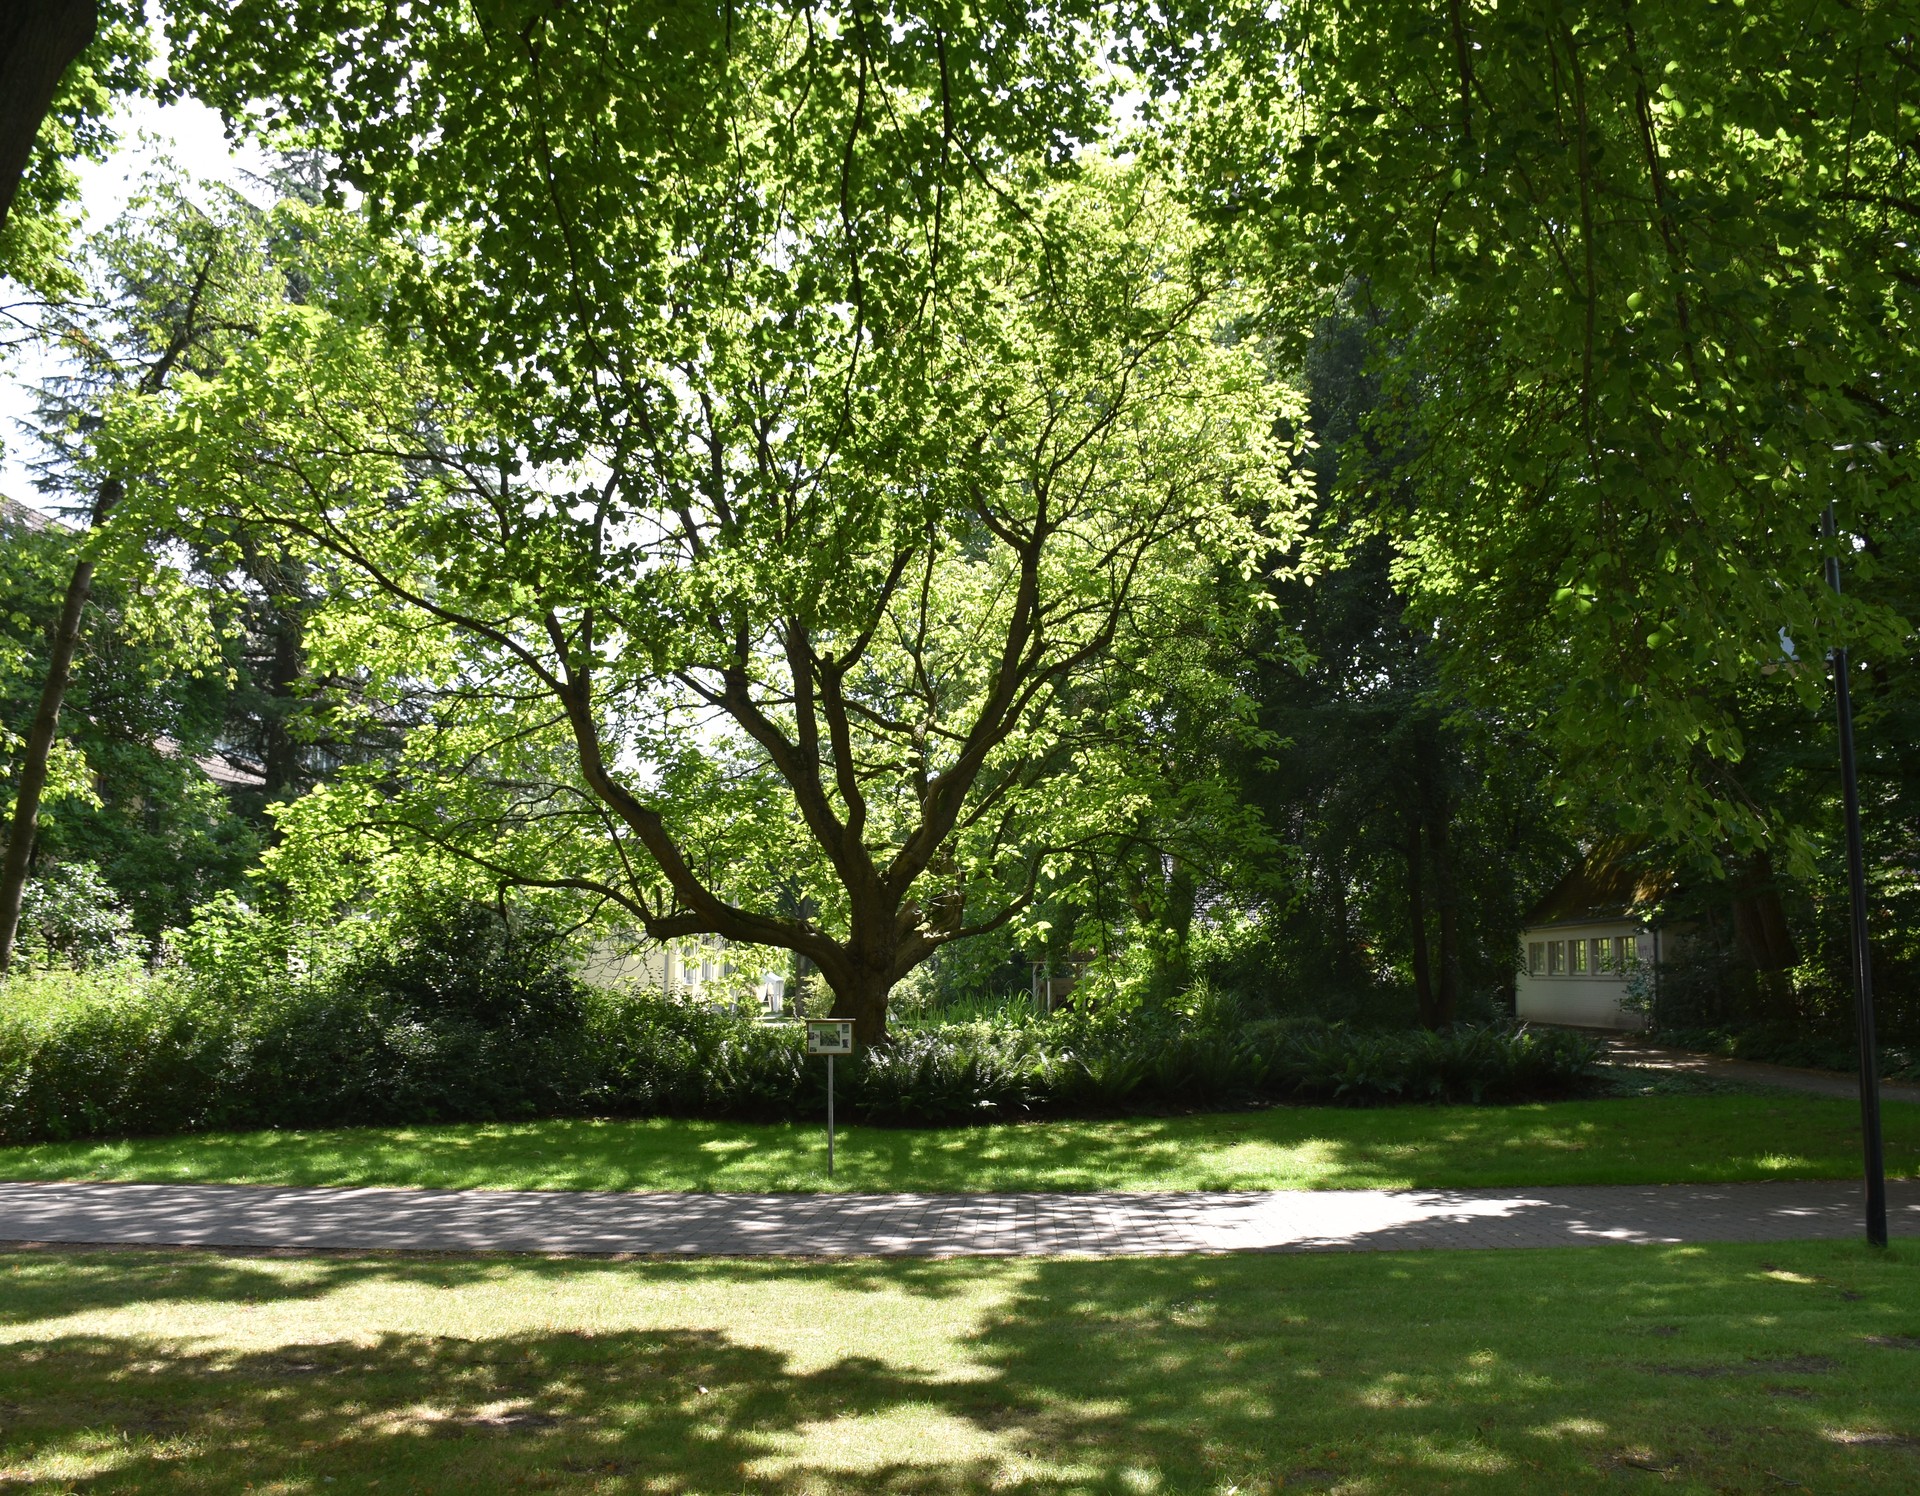 Blick in das grüne Blätterdach eines alten Baumes inmitten von sommerlicher Parklandschaft